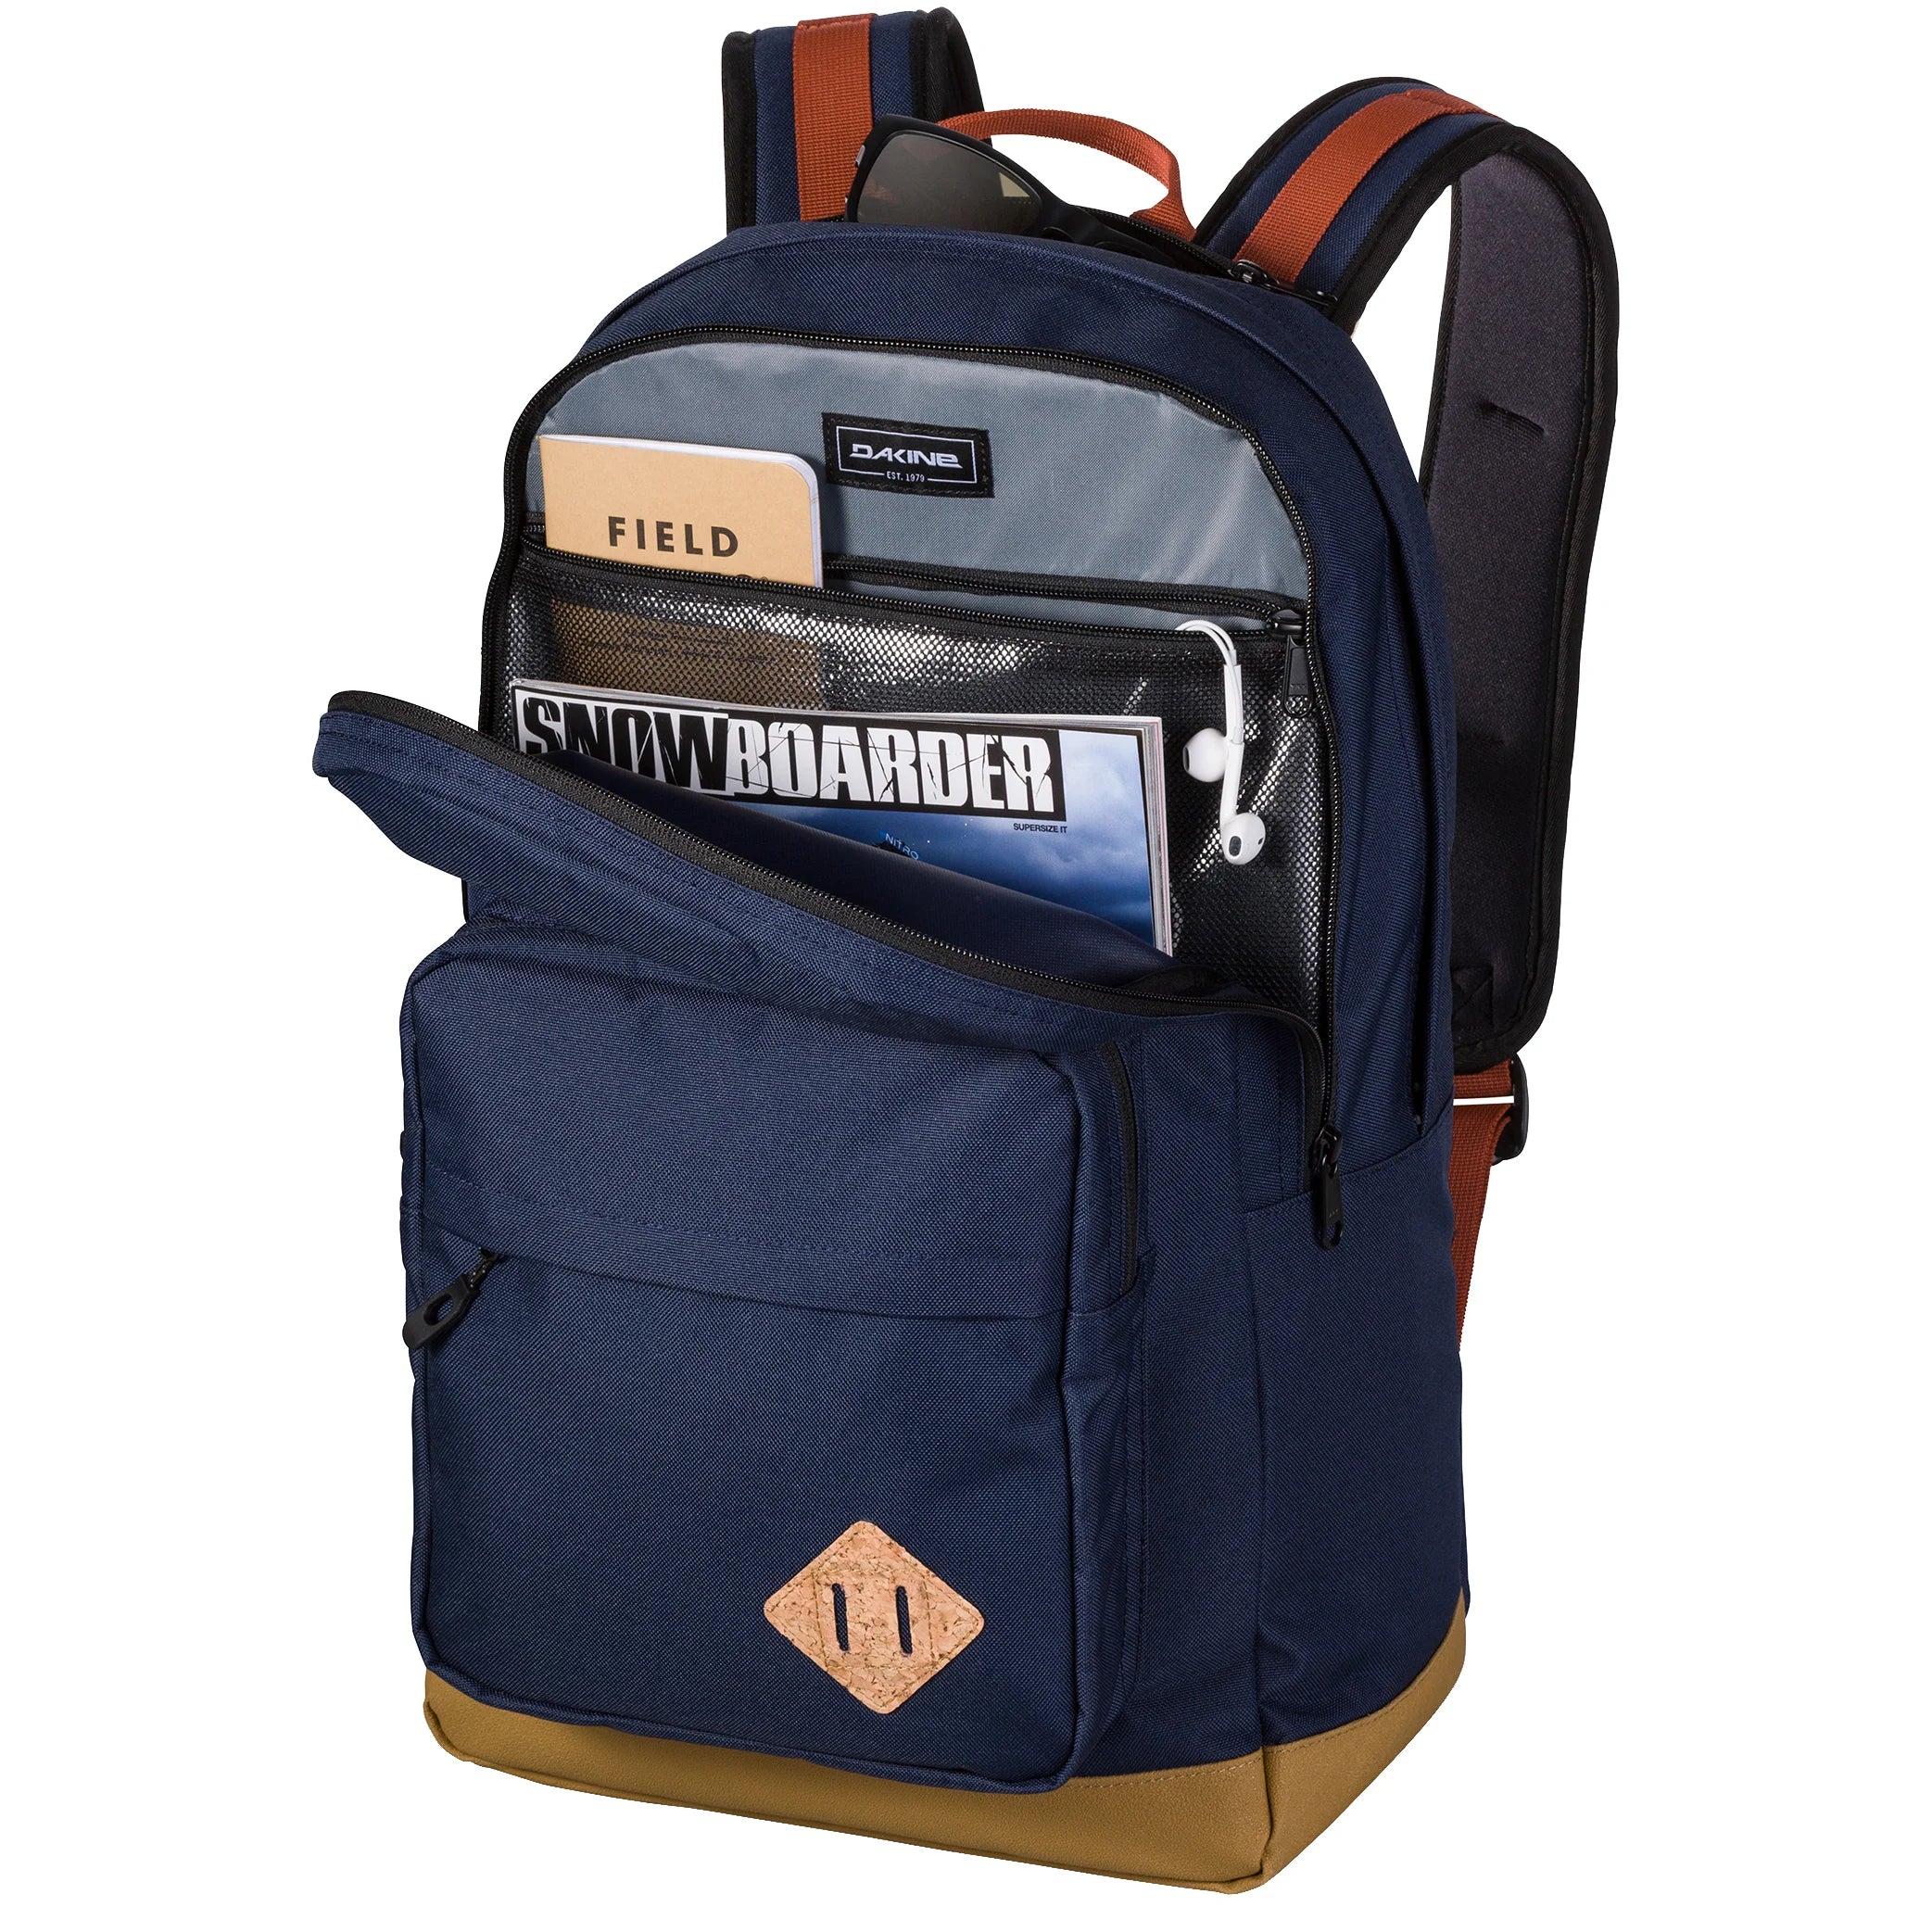 Dakine Packs & Bags 365 Pack DLX Backpack 47 cm - Black